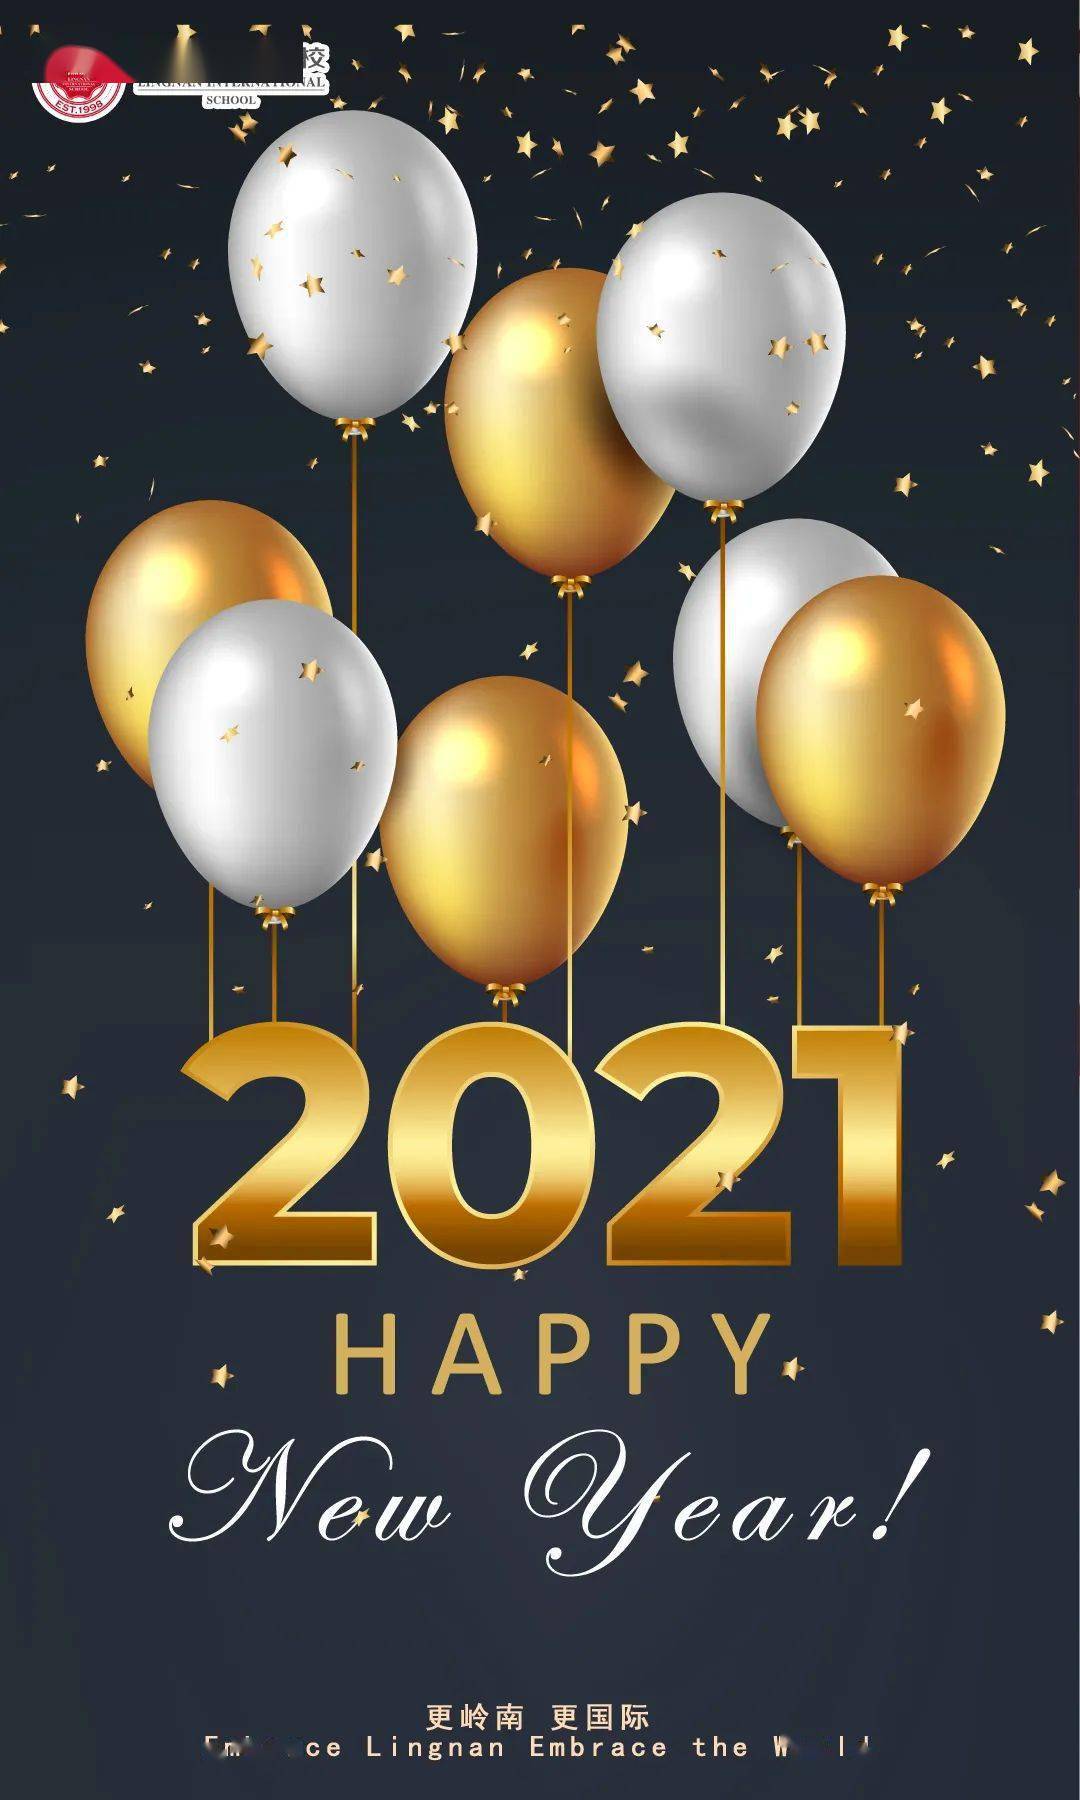 愿2021充满惊喜,happy new year!